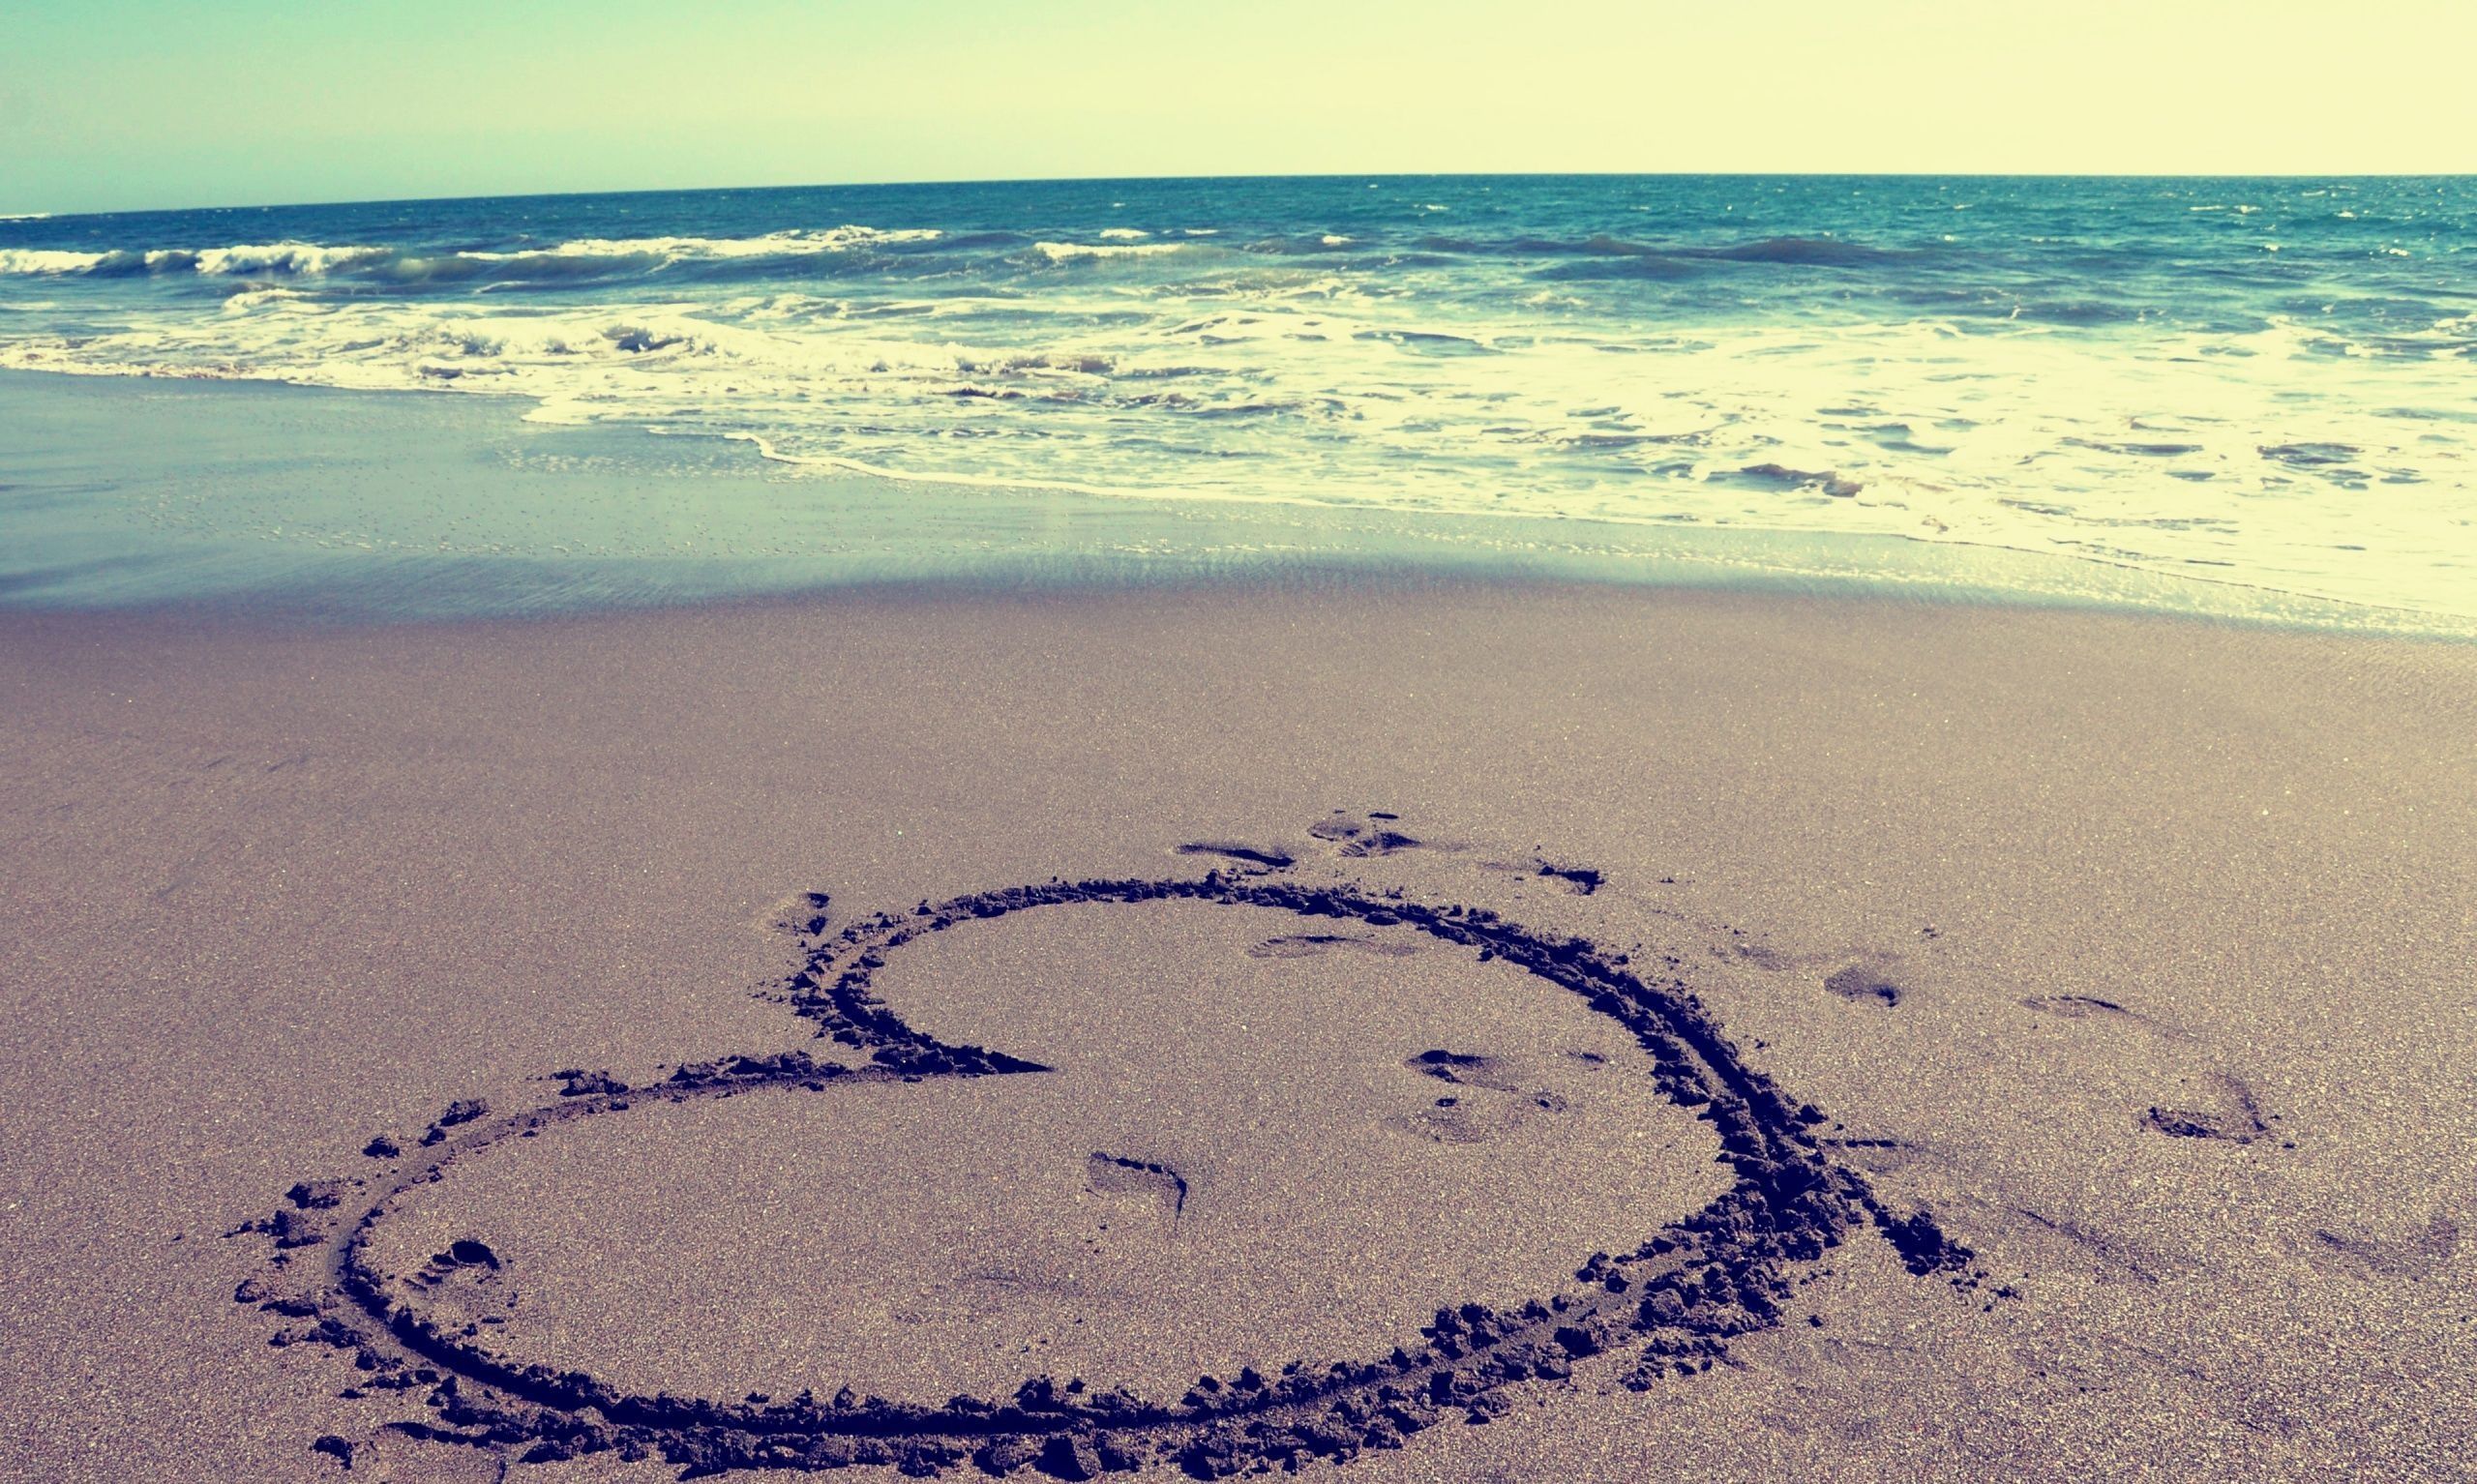 A heart drawn in the sand on a beach. - Beach